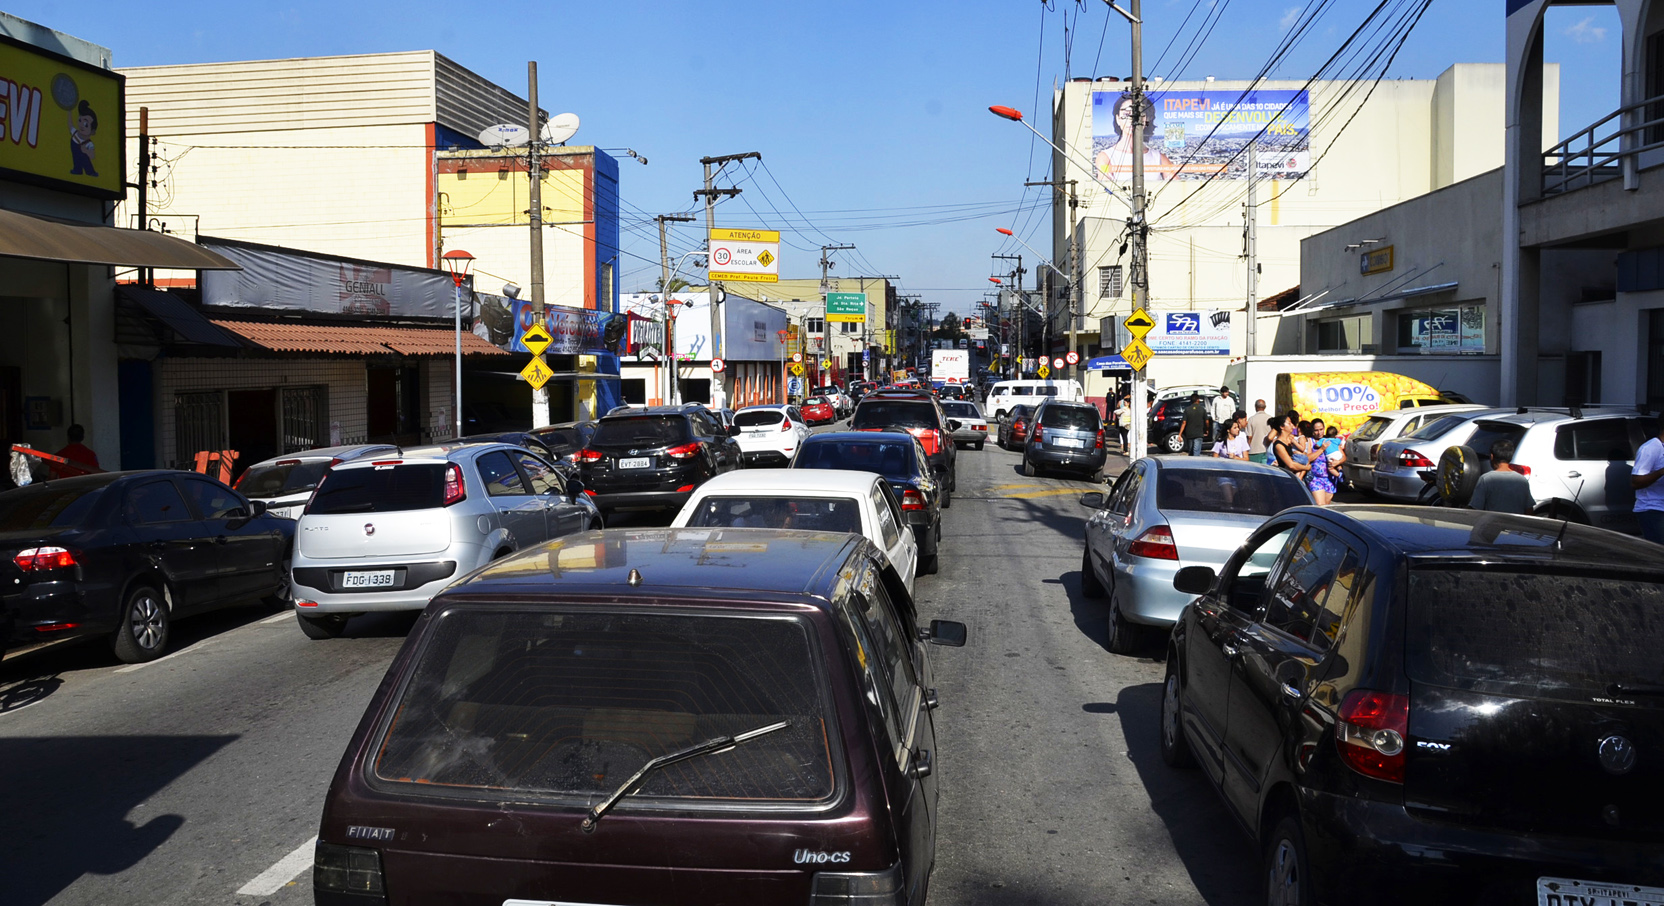  Medida visa melhorar o trânsito na região central da cidade